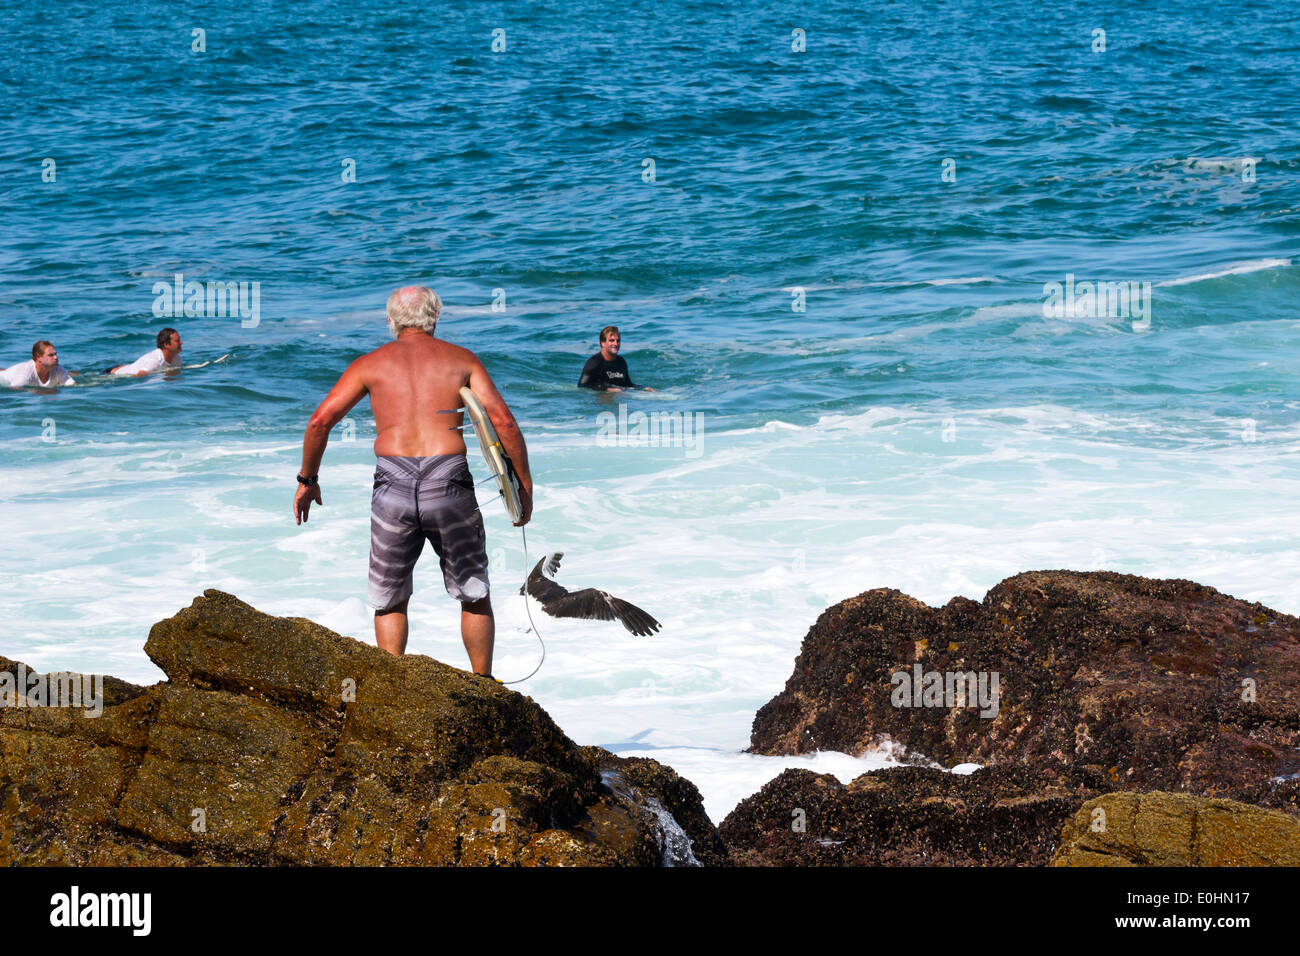 Mâle adulte Senior surfer se dresse sur un rivage rocailleux en attente de sauter dans l'eau, plage de surf, Victoria Bay, Garden Route Banque D'Images